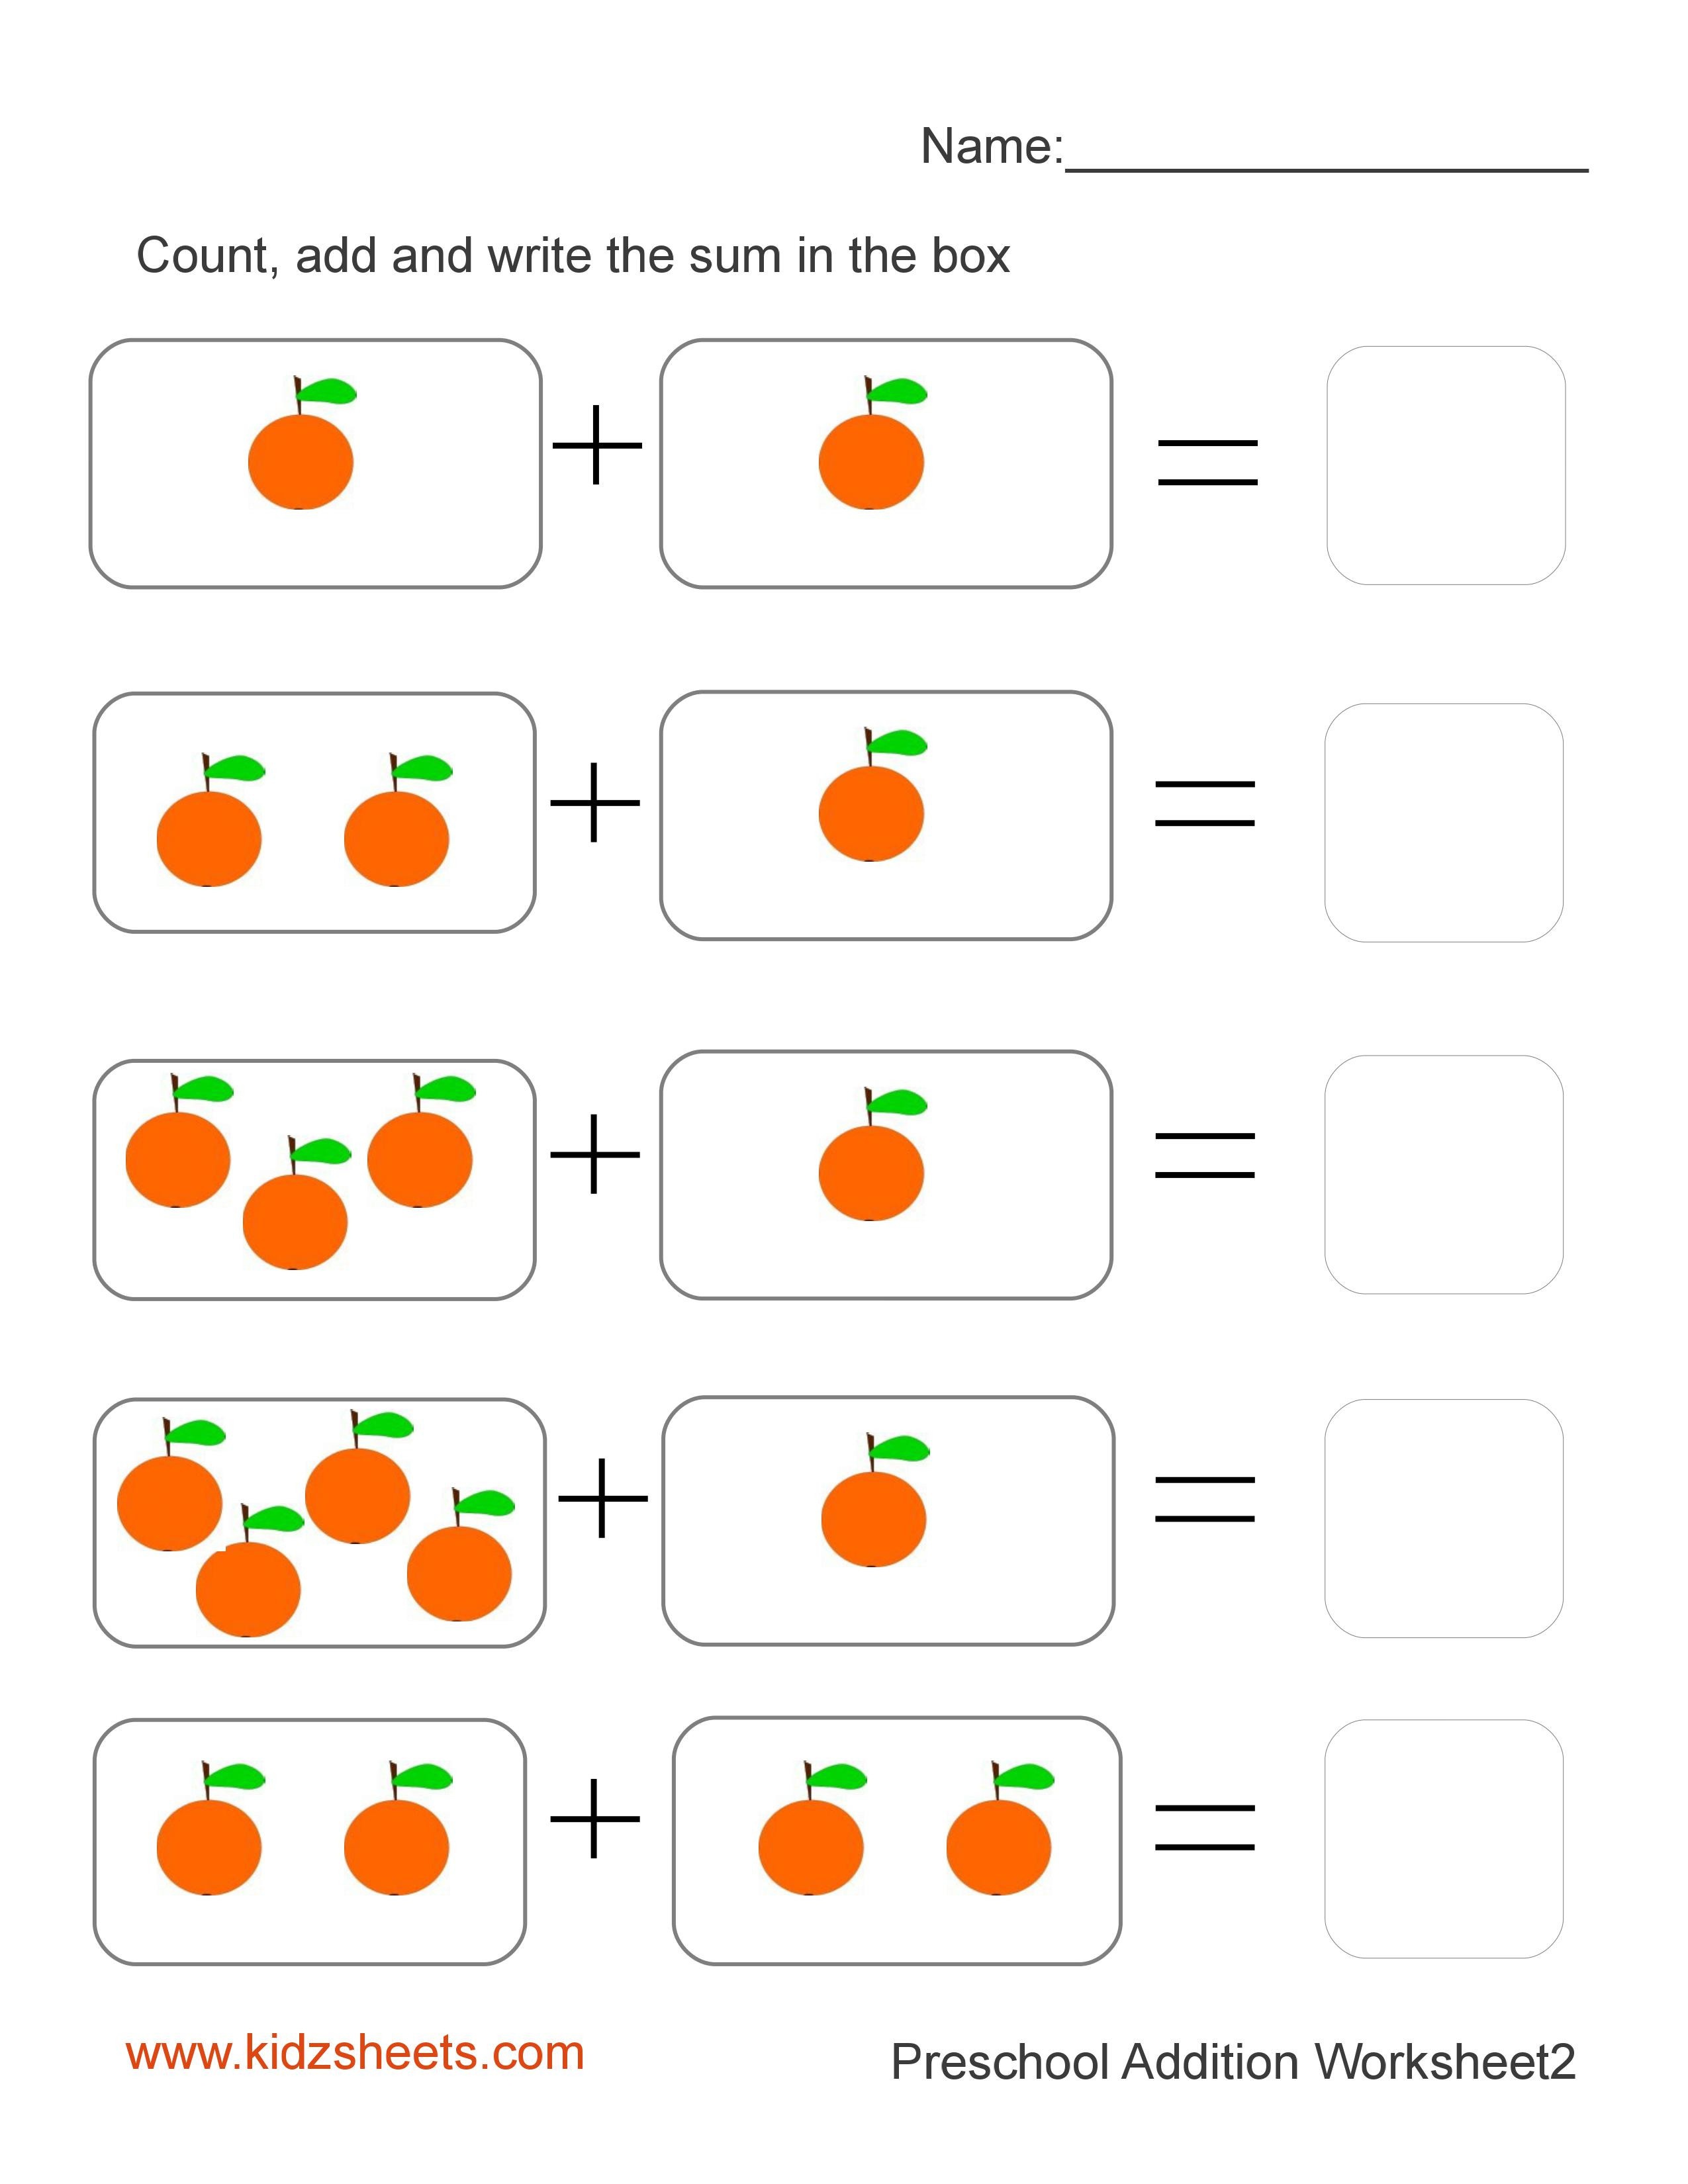 Printable Kg Worksheets Learning Printable Maths Worksheet For Kg 2 In 2020 Kindergarten Math